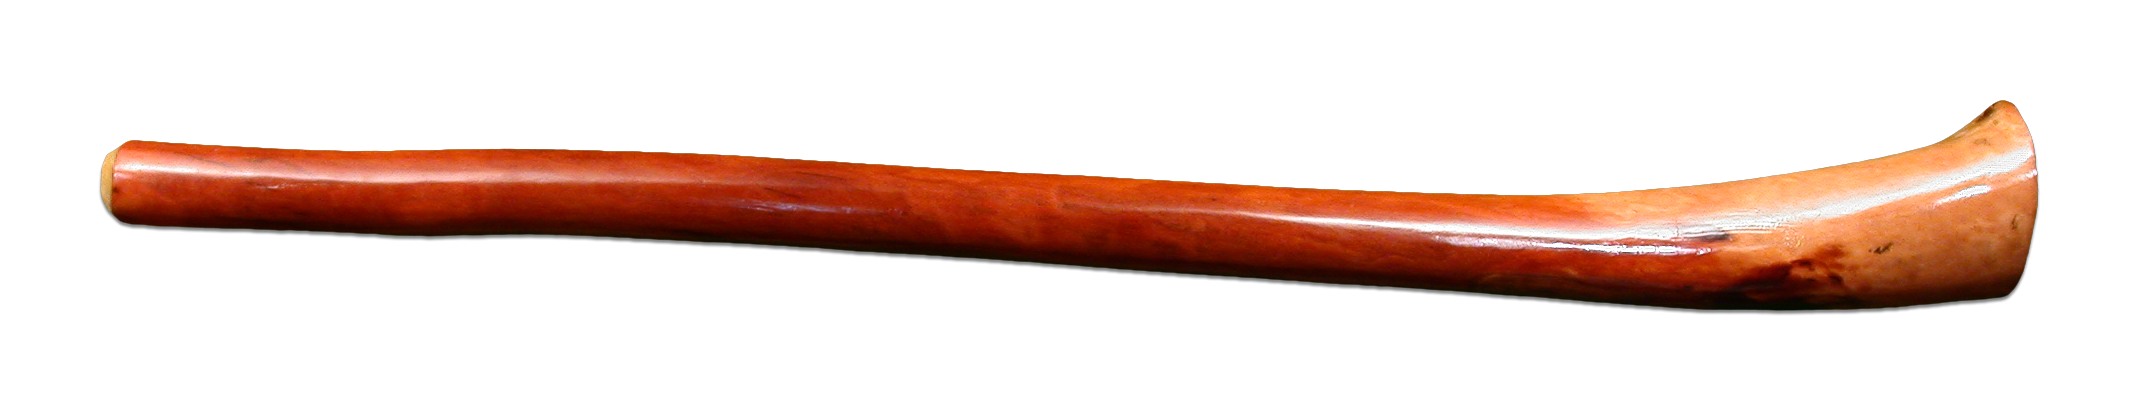 didgeridoo vector graphic